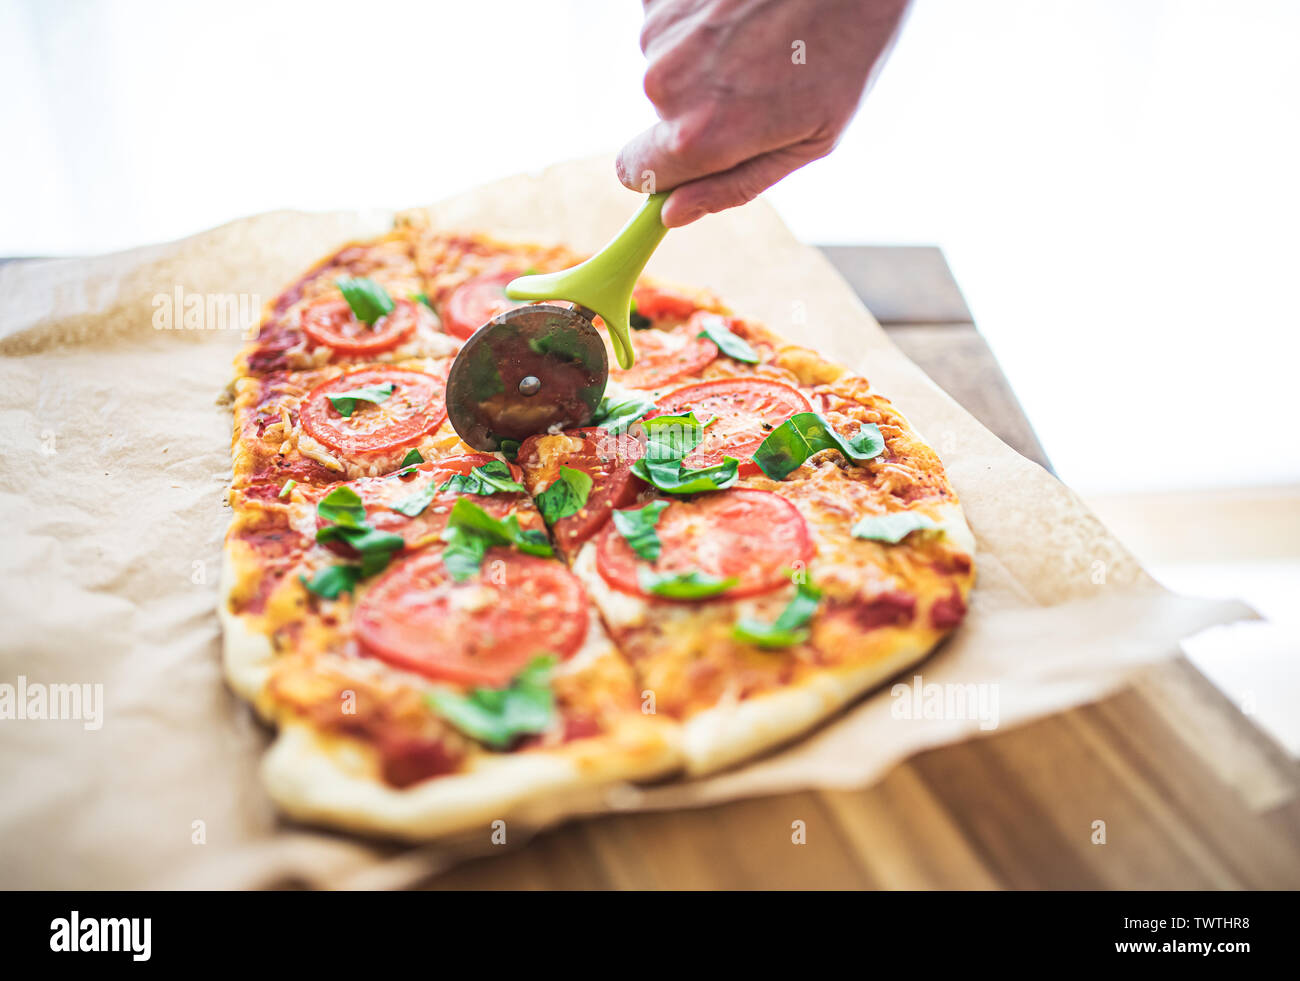 High angle view of hand cutting pizza Margherita maison délicieux avec des tomates et basilic à l'aide d'un coupe-pizza Banque D'Images